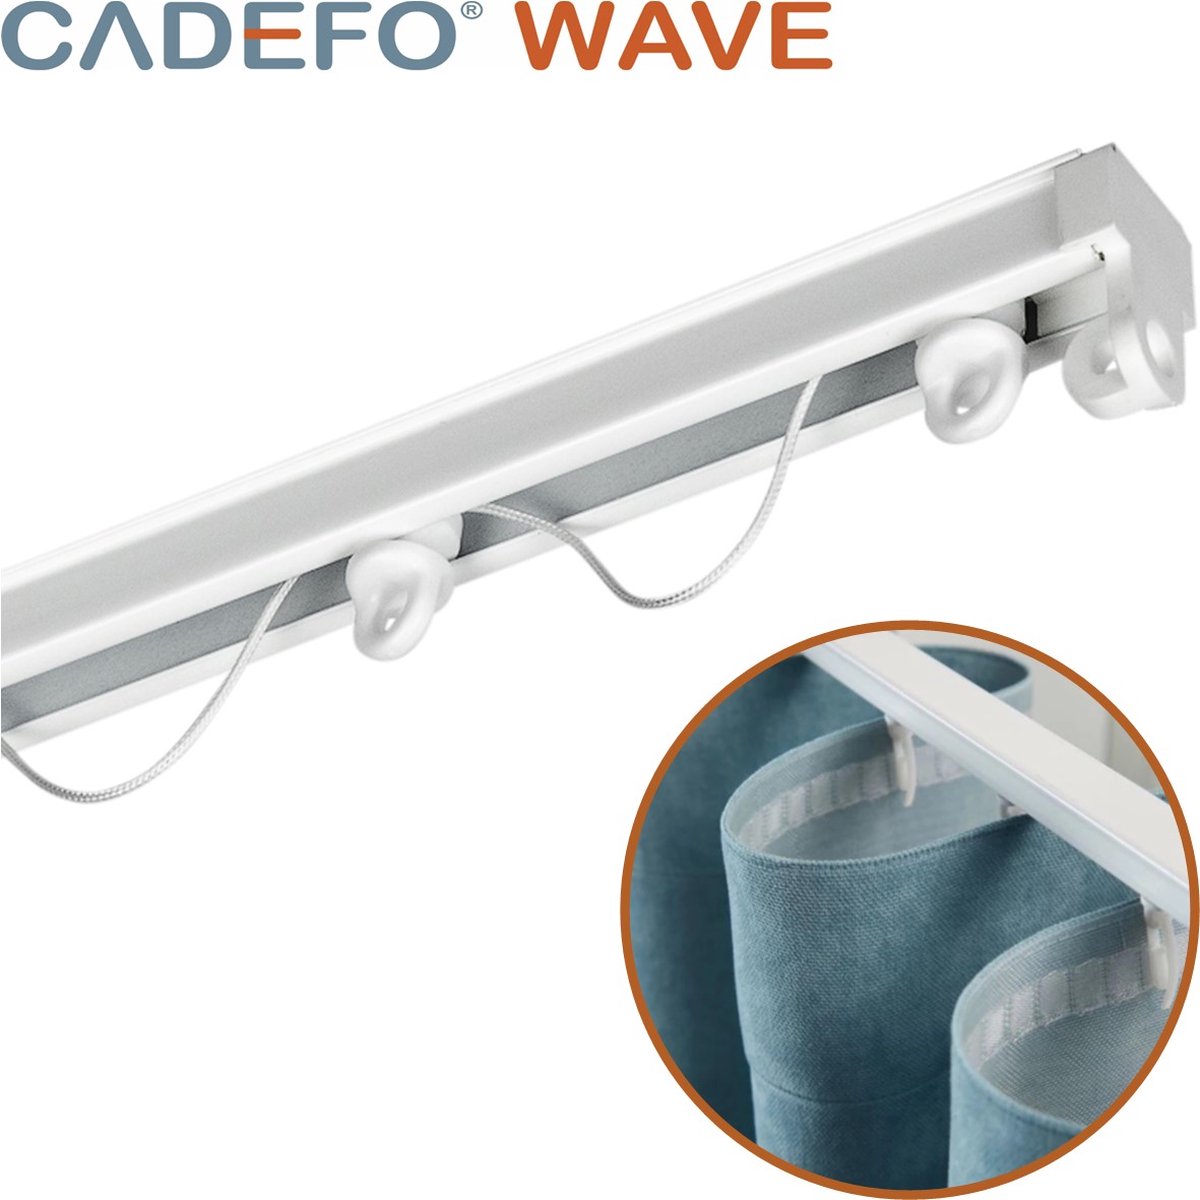 CADEFO WAVE (351 - 400 cm) Gordijnrails - Compleet op maat! - UIT 1 STUK - Leverbaar tot 6 meter - Plafondbevestiging - Lengte 392 cm